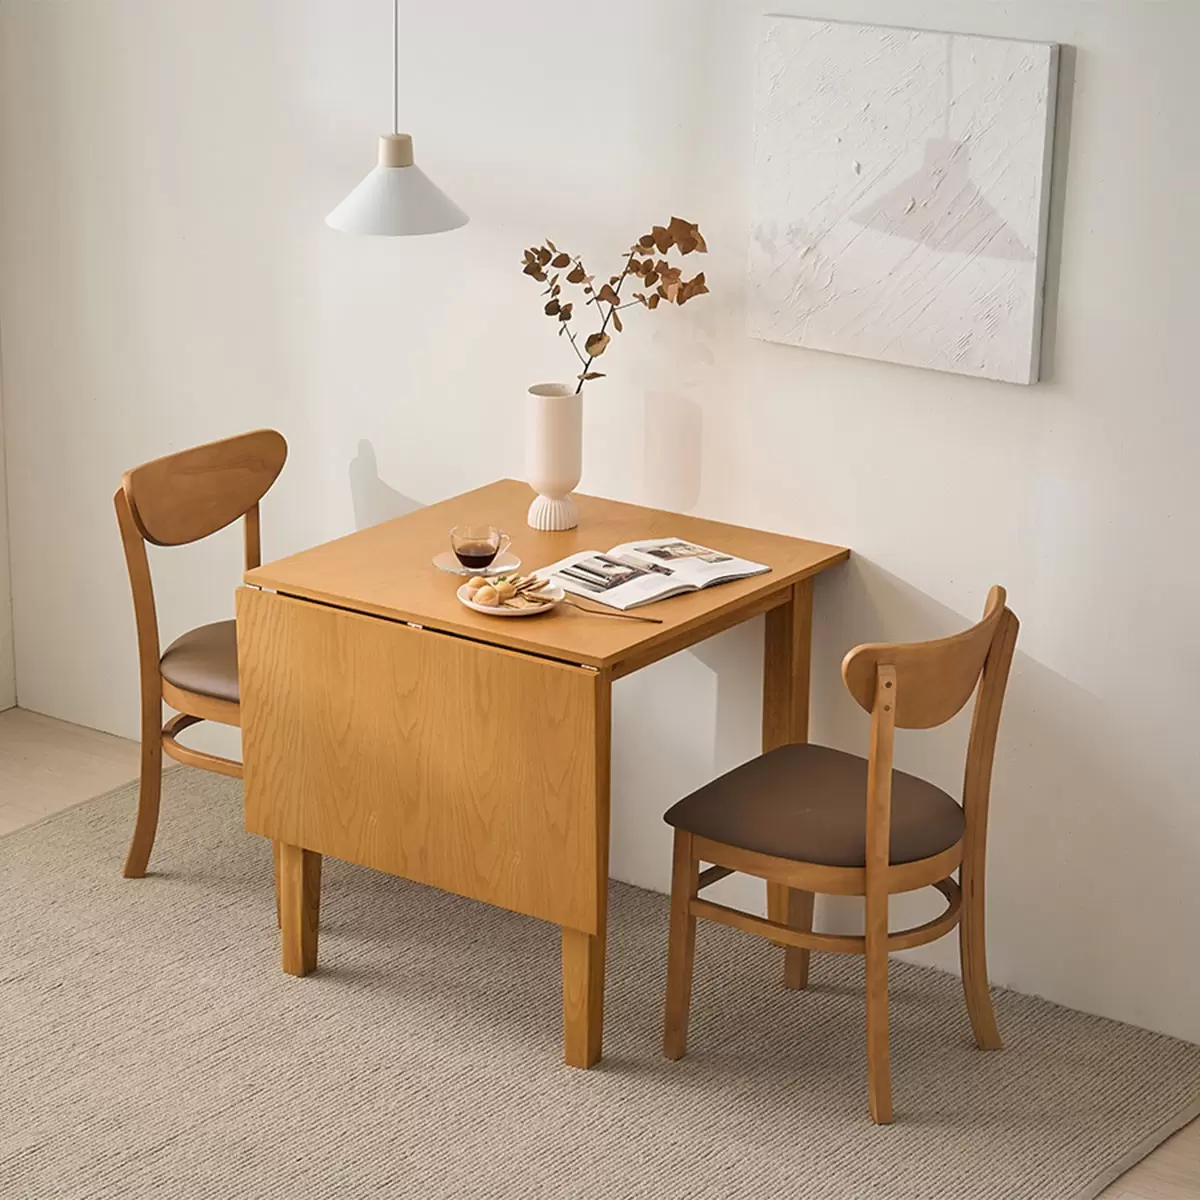 Finlandia 可摺疊式餐桌椅三件組 淺咖啡色